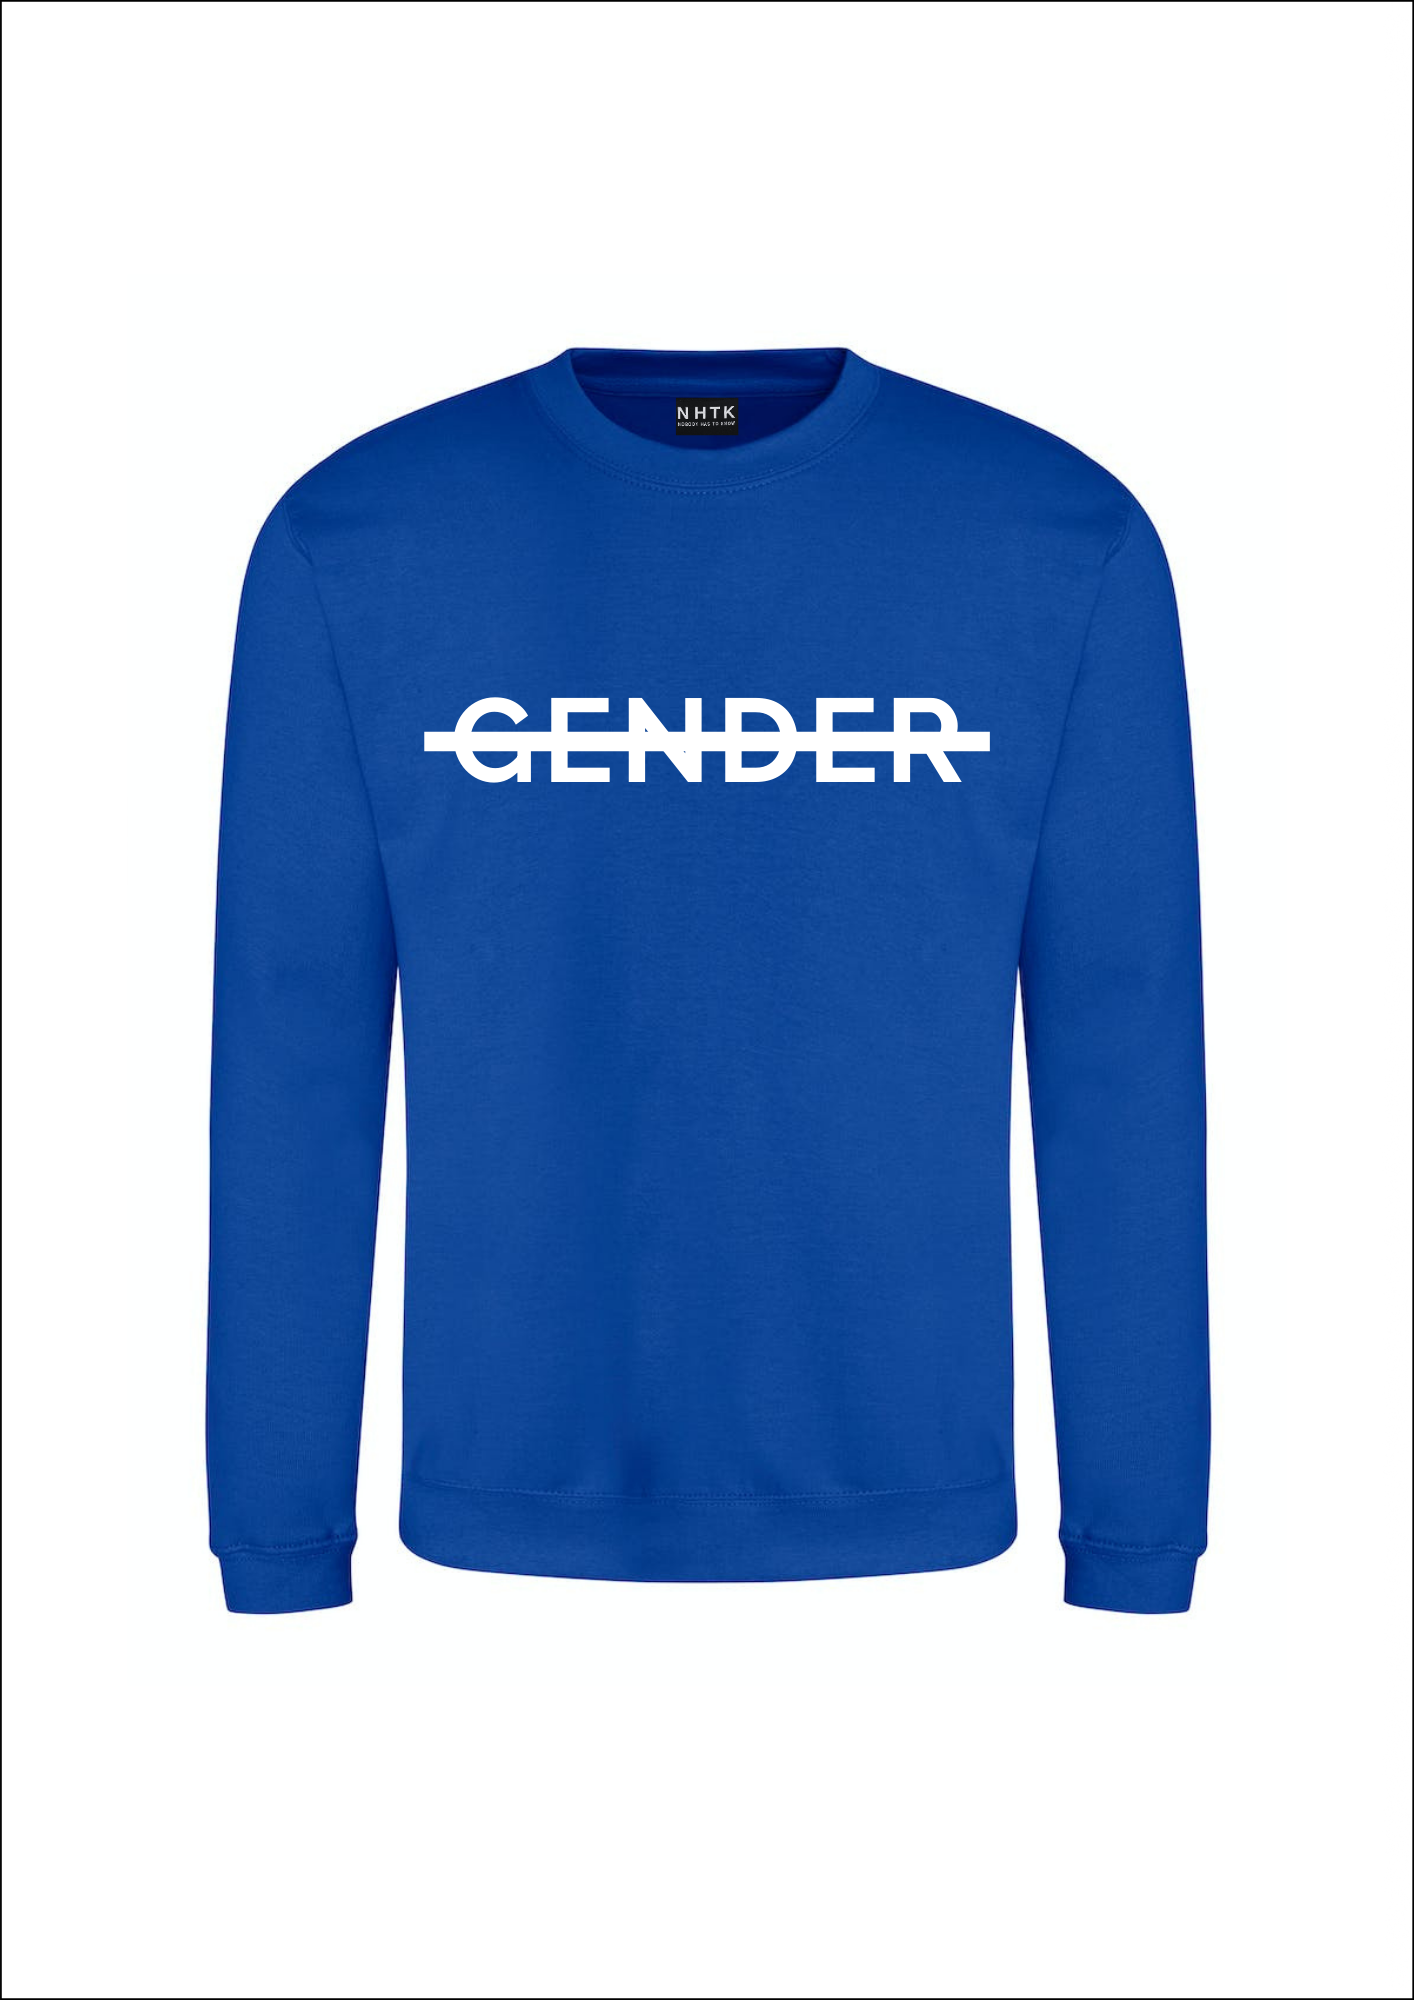 No gender sweater - blue